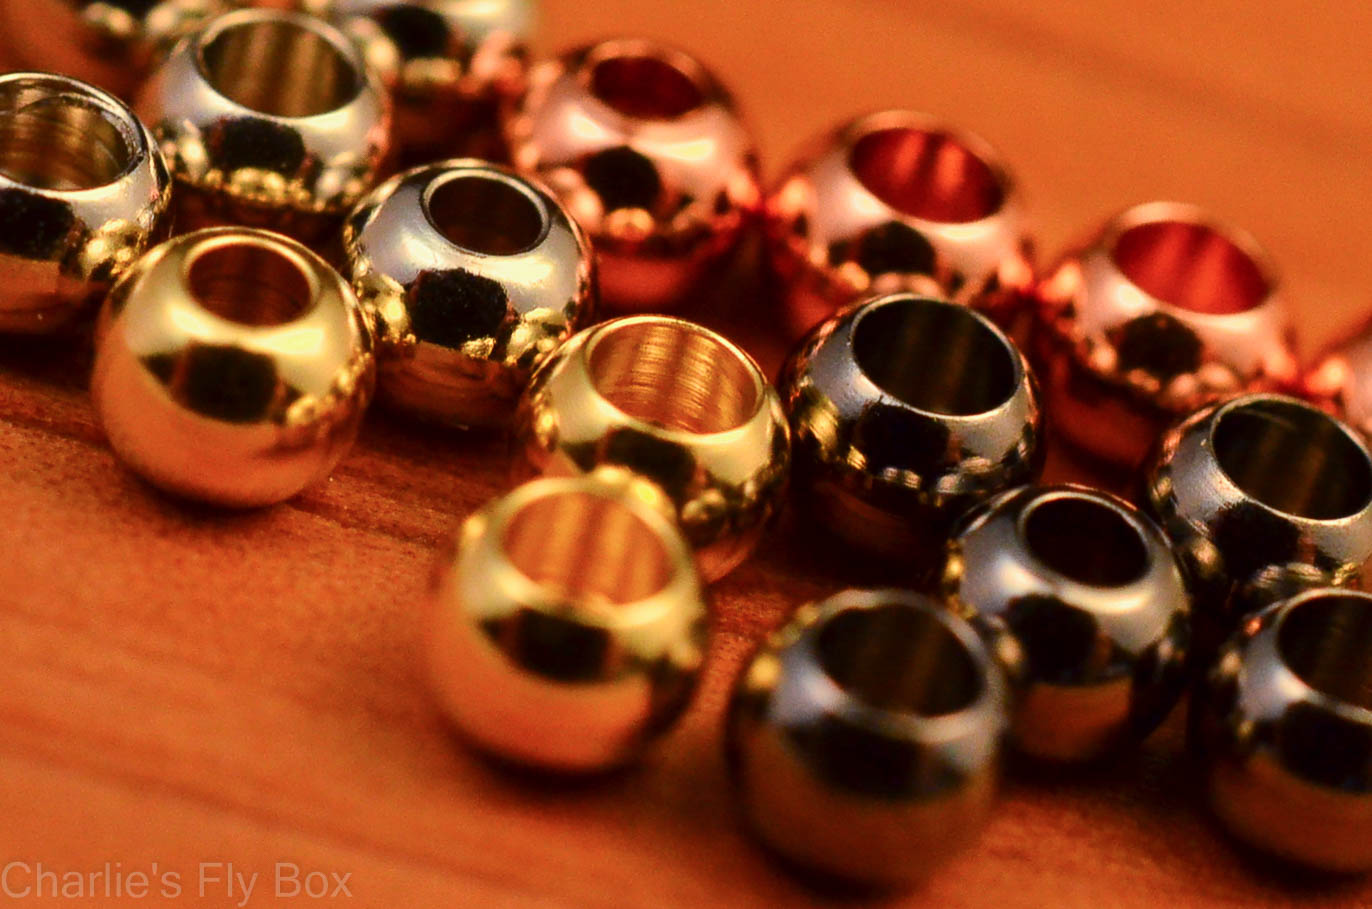 Brass Beads